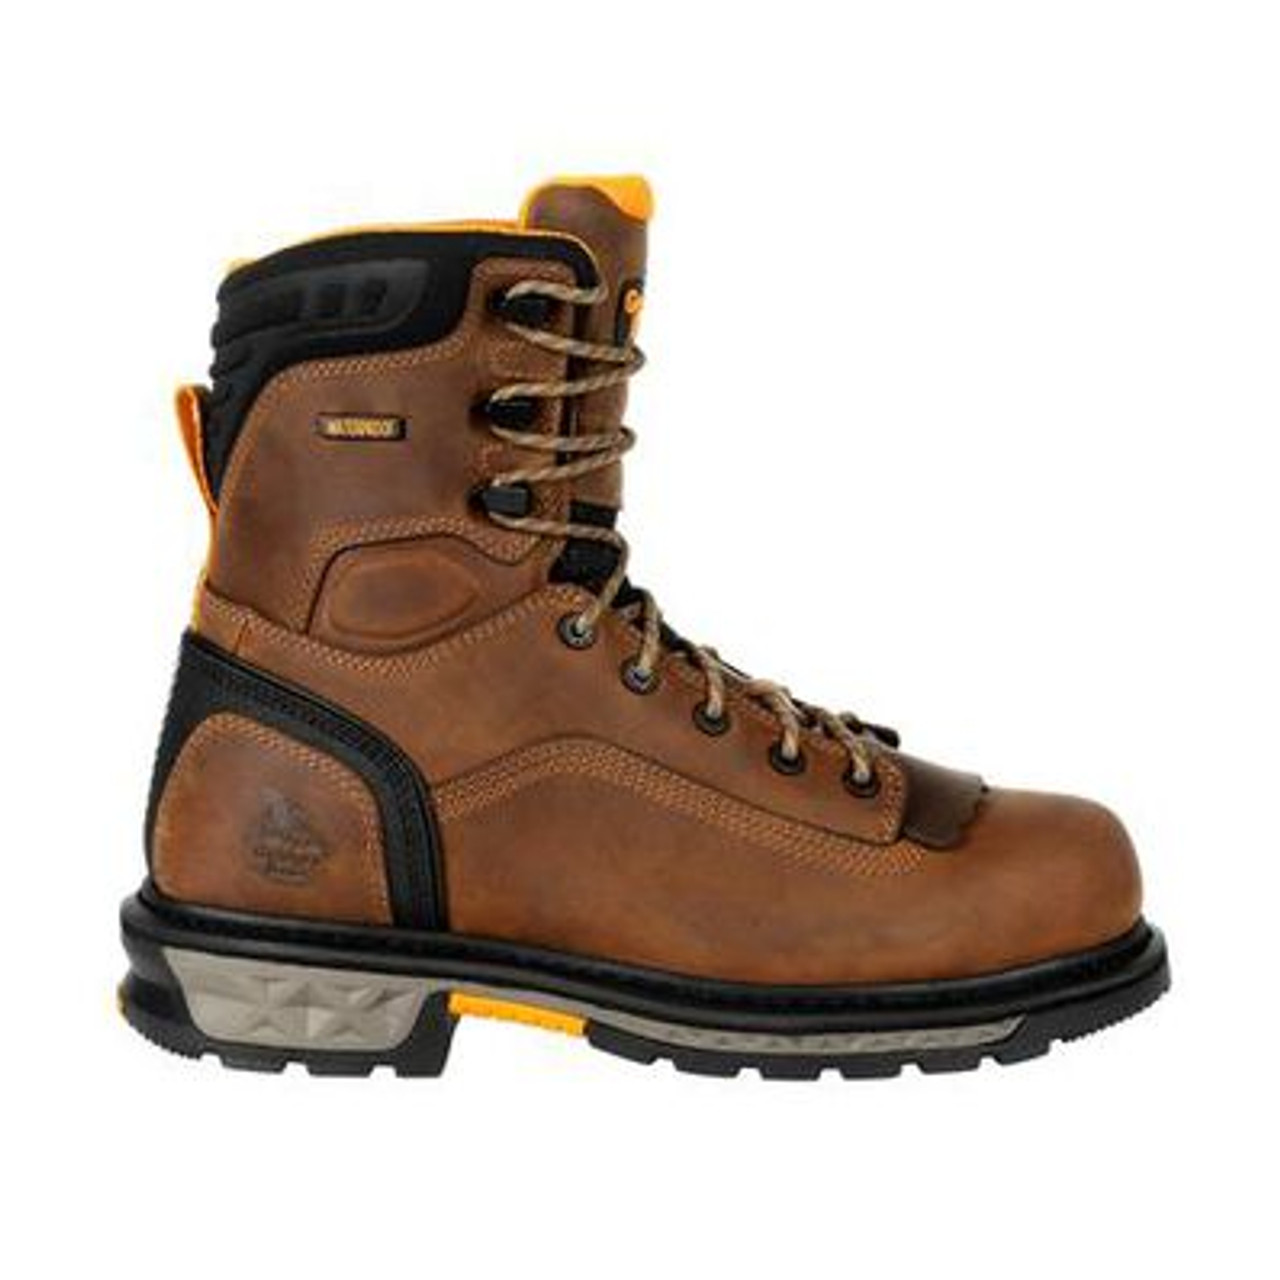 Georgia - Men's - Carbo-Tec LTX Composite Toe Work Boot